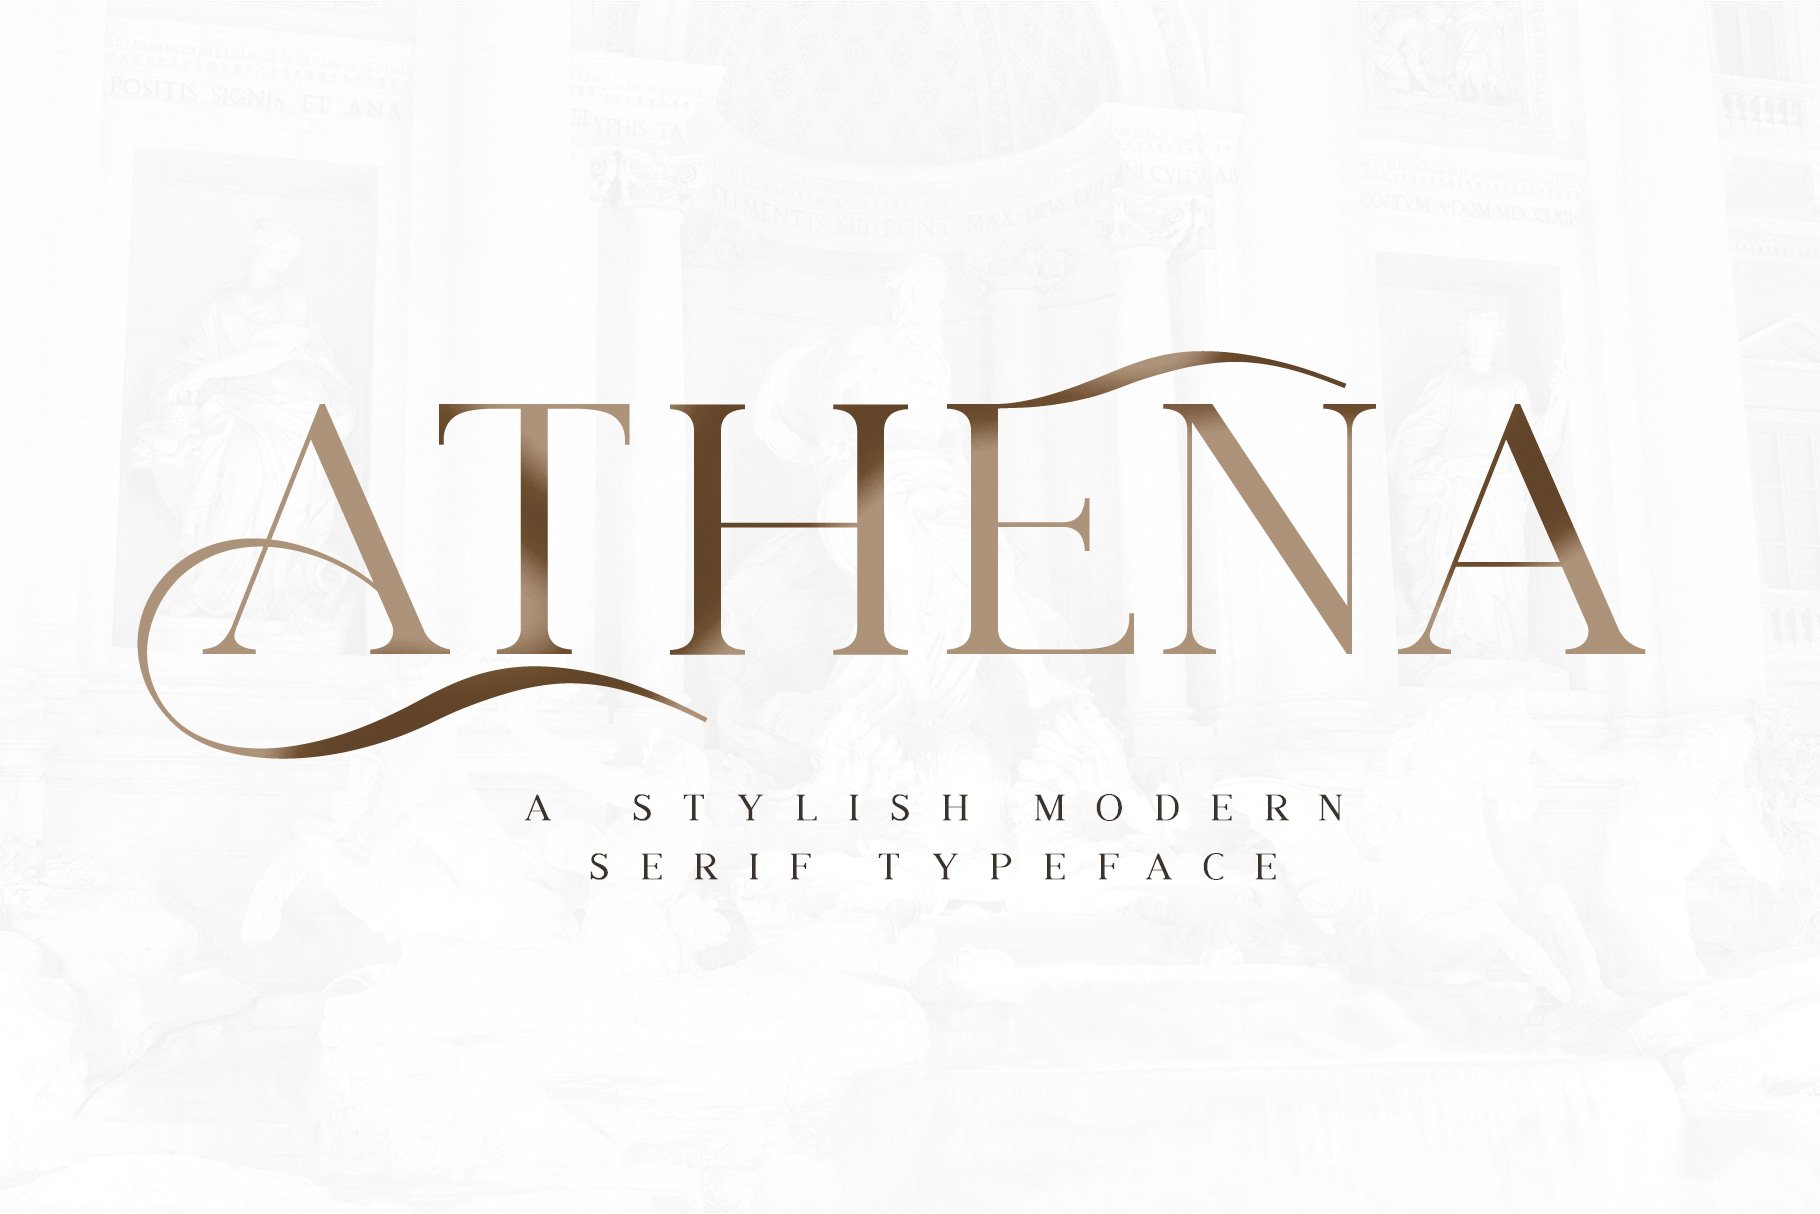 Athena - Stylish Modern Serif Font cover image.